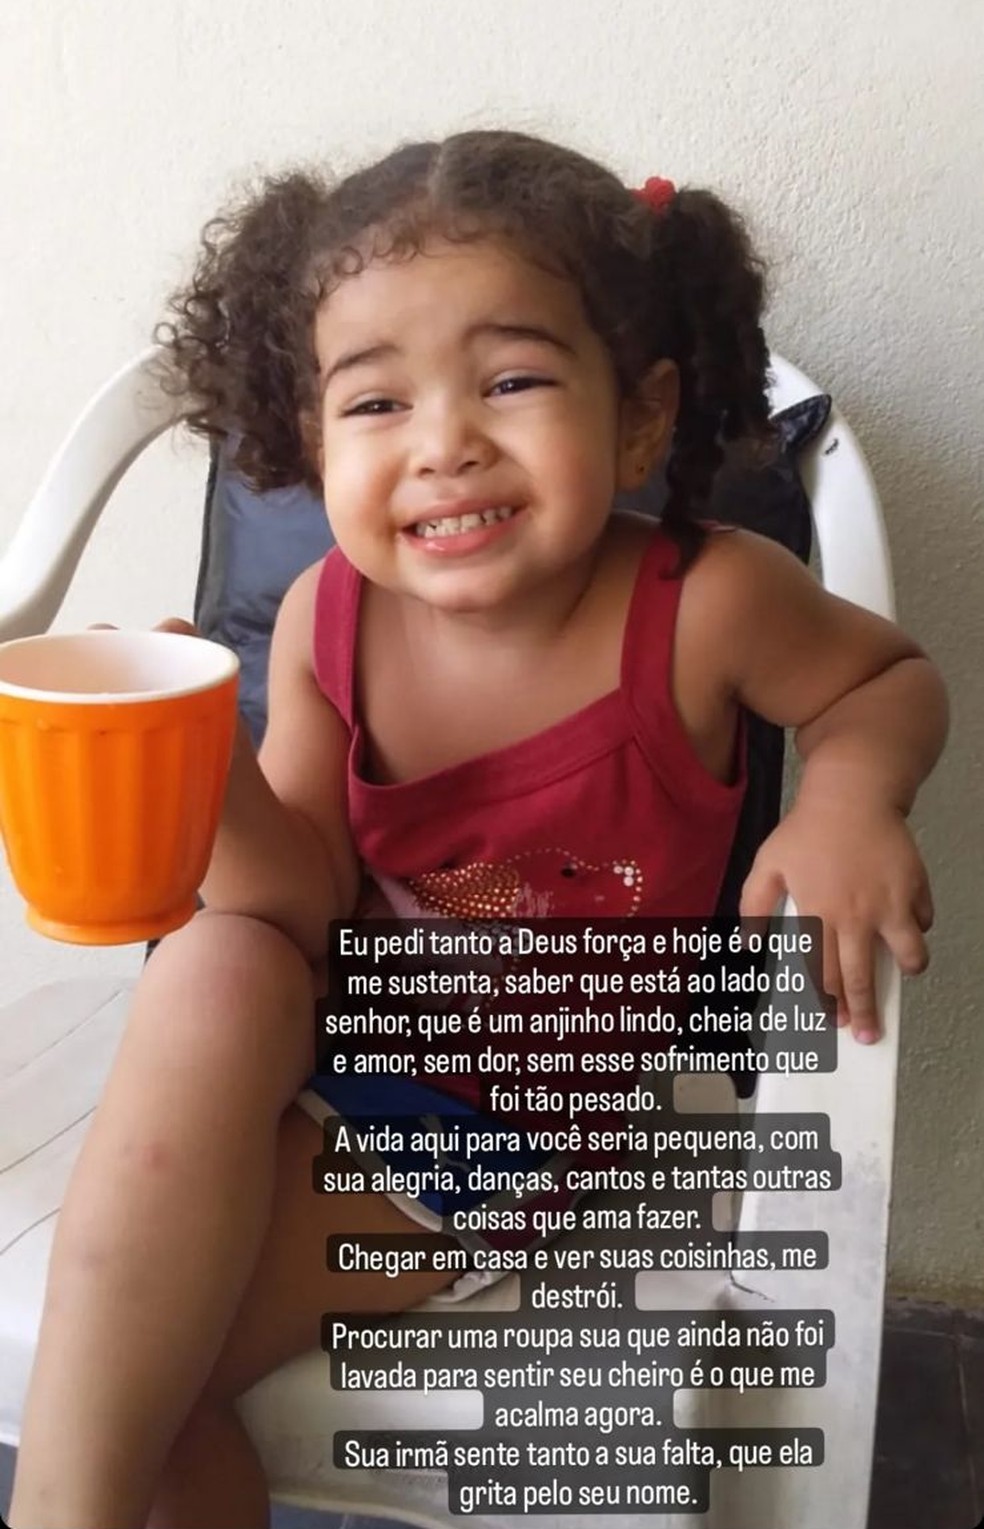 Alana dos Santos Silva, mãe da pequena Heloísa, faz desabafo nas redes sociais após morte da filha — Foto: Reprodução